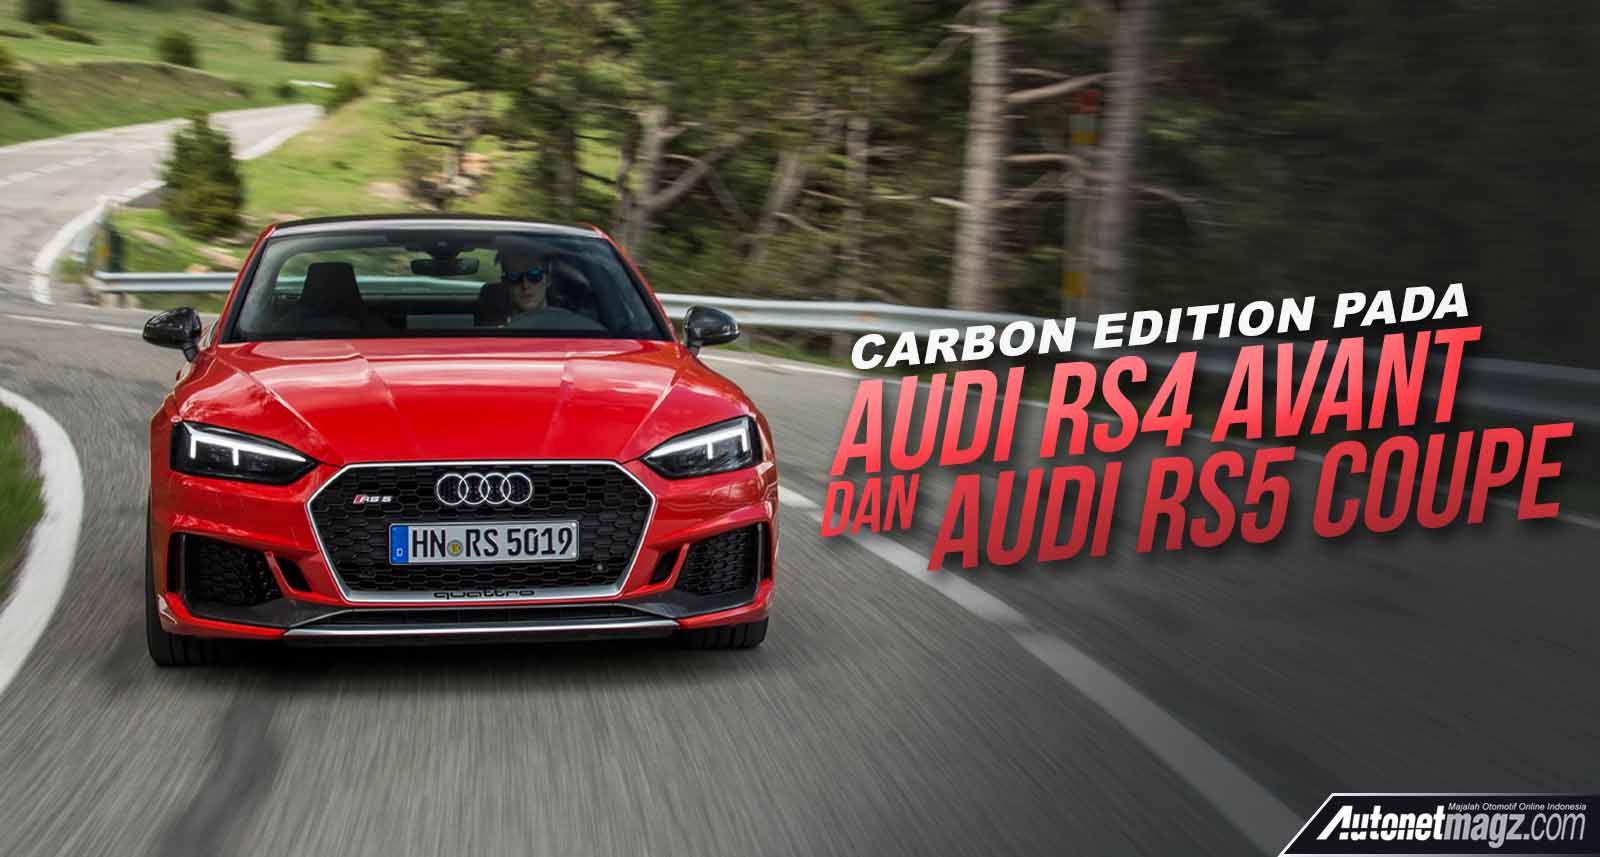 Audi, carbon edition audi: Carbon Edition Hadir Pada Audi RS4 Avant & RS5 Coupe